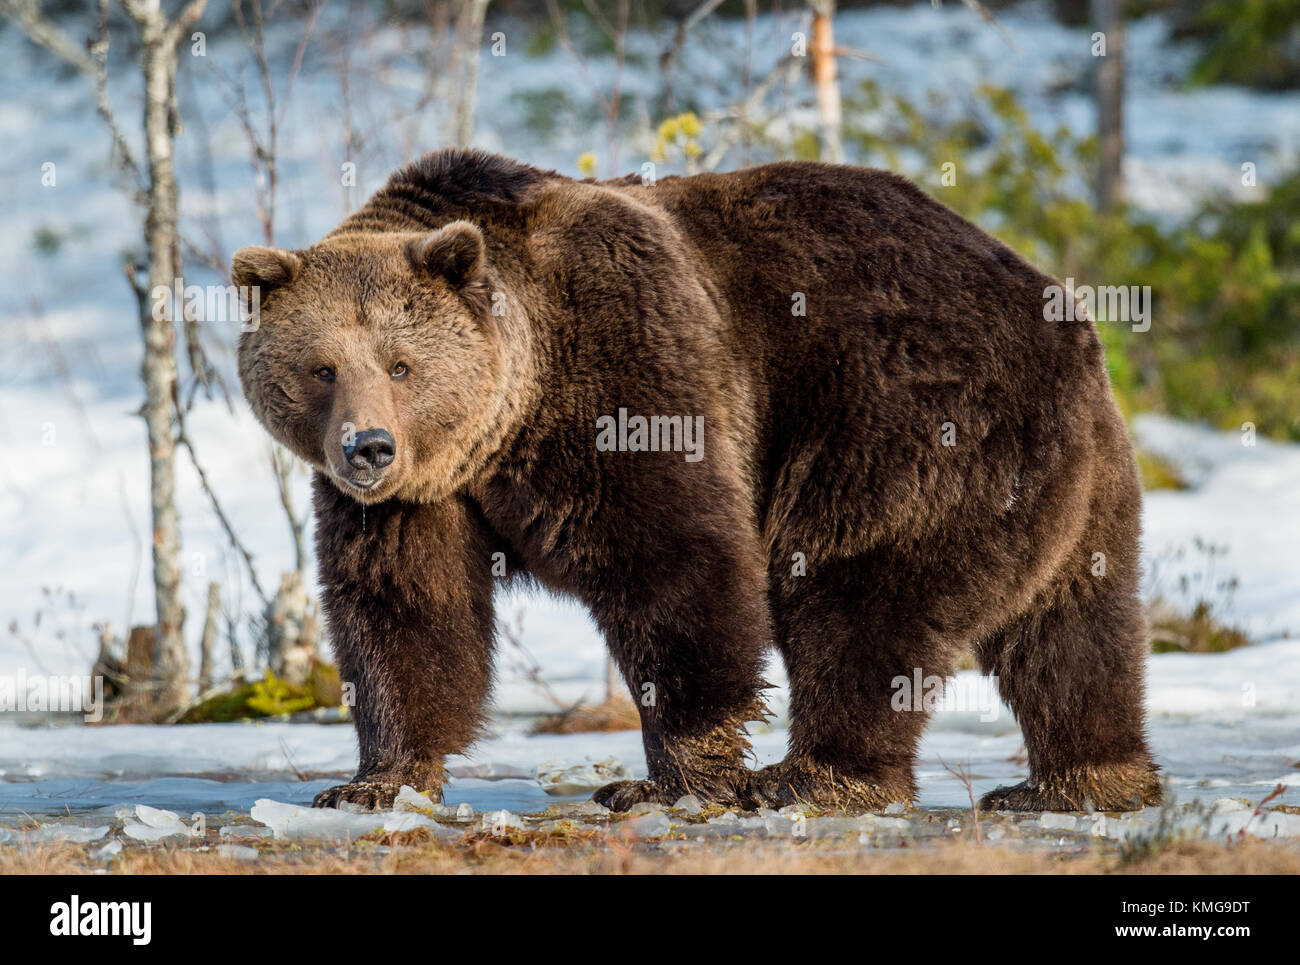 Nahaufnahme Portrait von erwachsenen männlichen Braunbären auf einer Schnee Sumpf im Frühjahr Wald bedeckt. eurasischer Braunbär (Ursus arctos arctos) Stockfoto